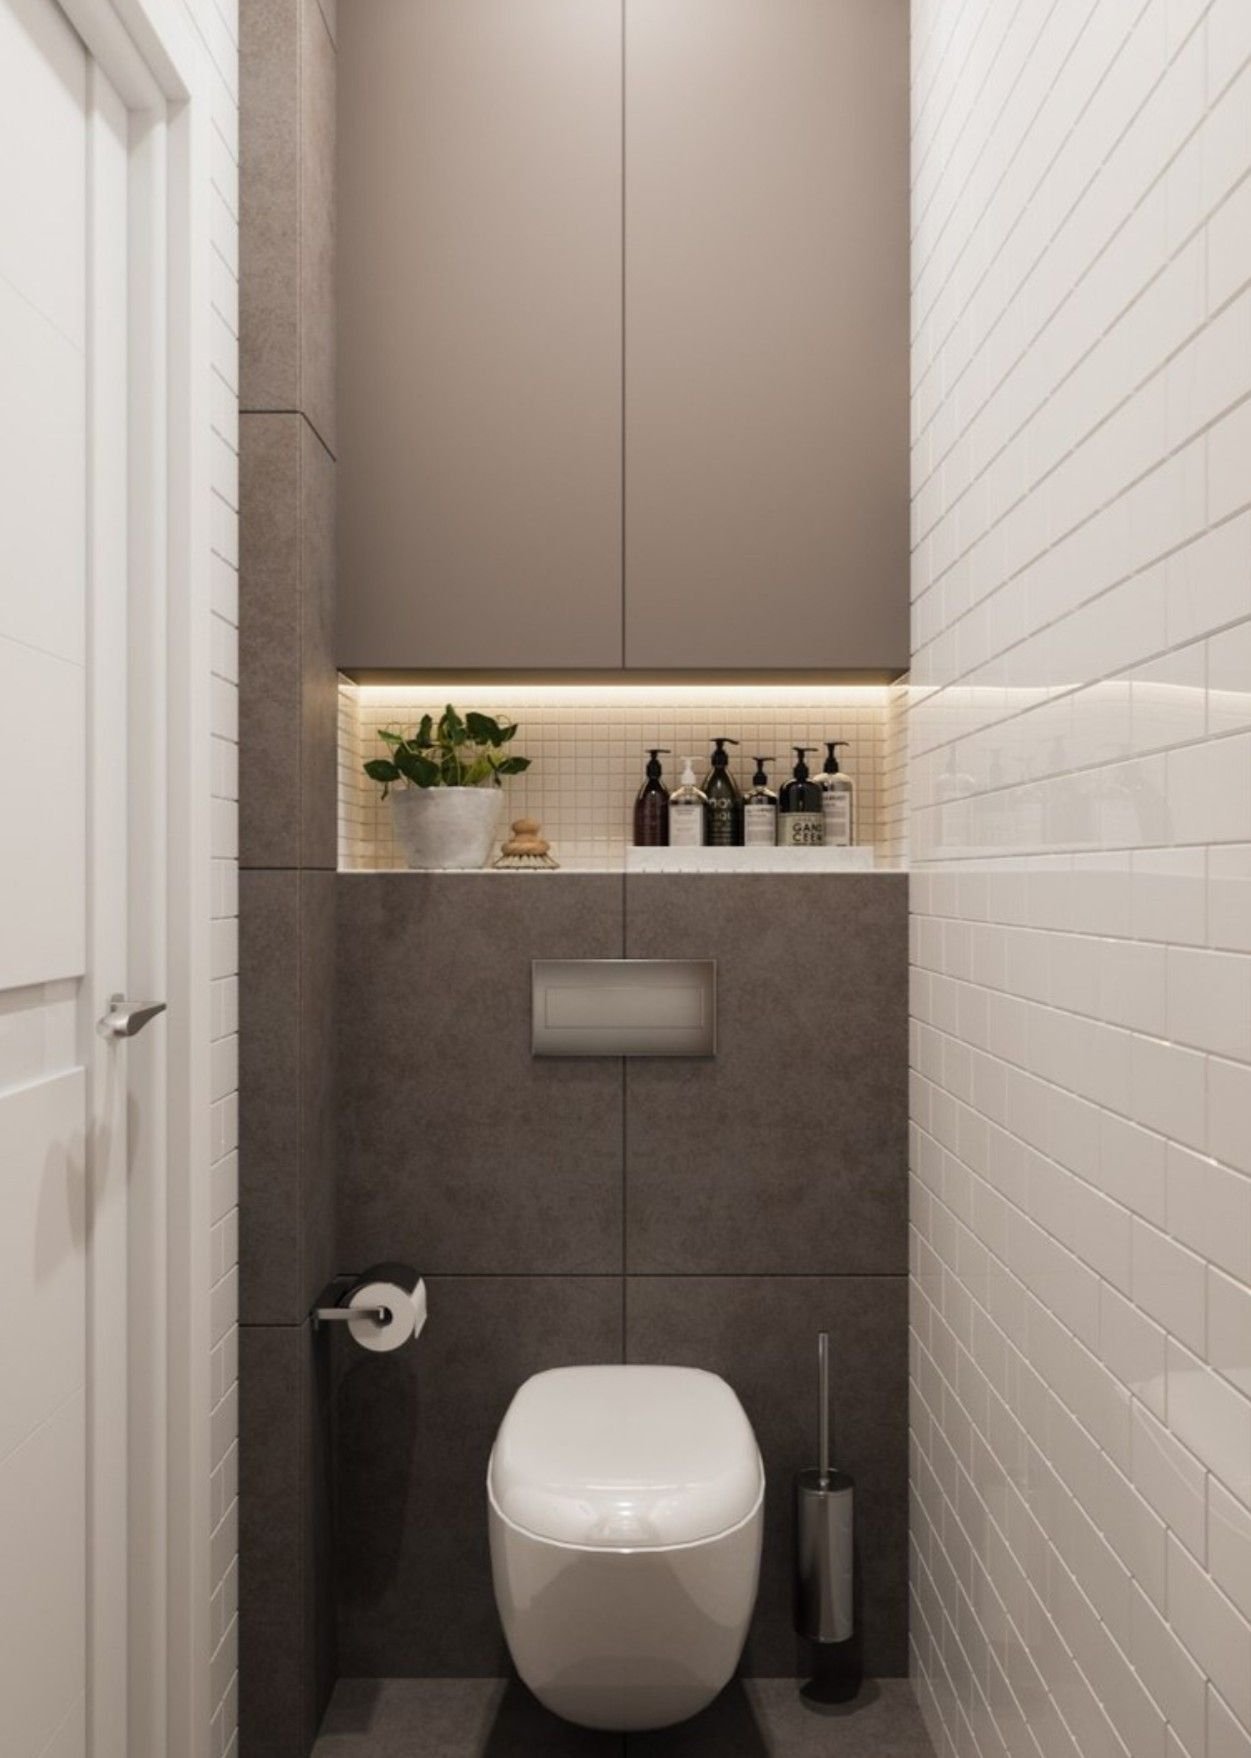 Узкий туалет с инсталляцией дизайн